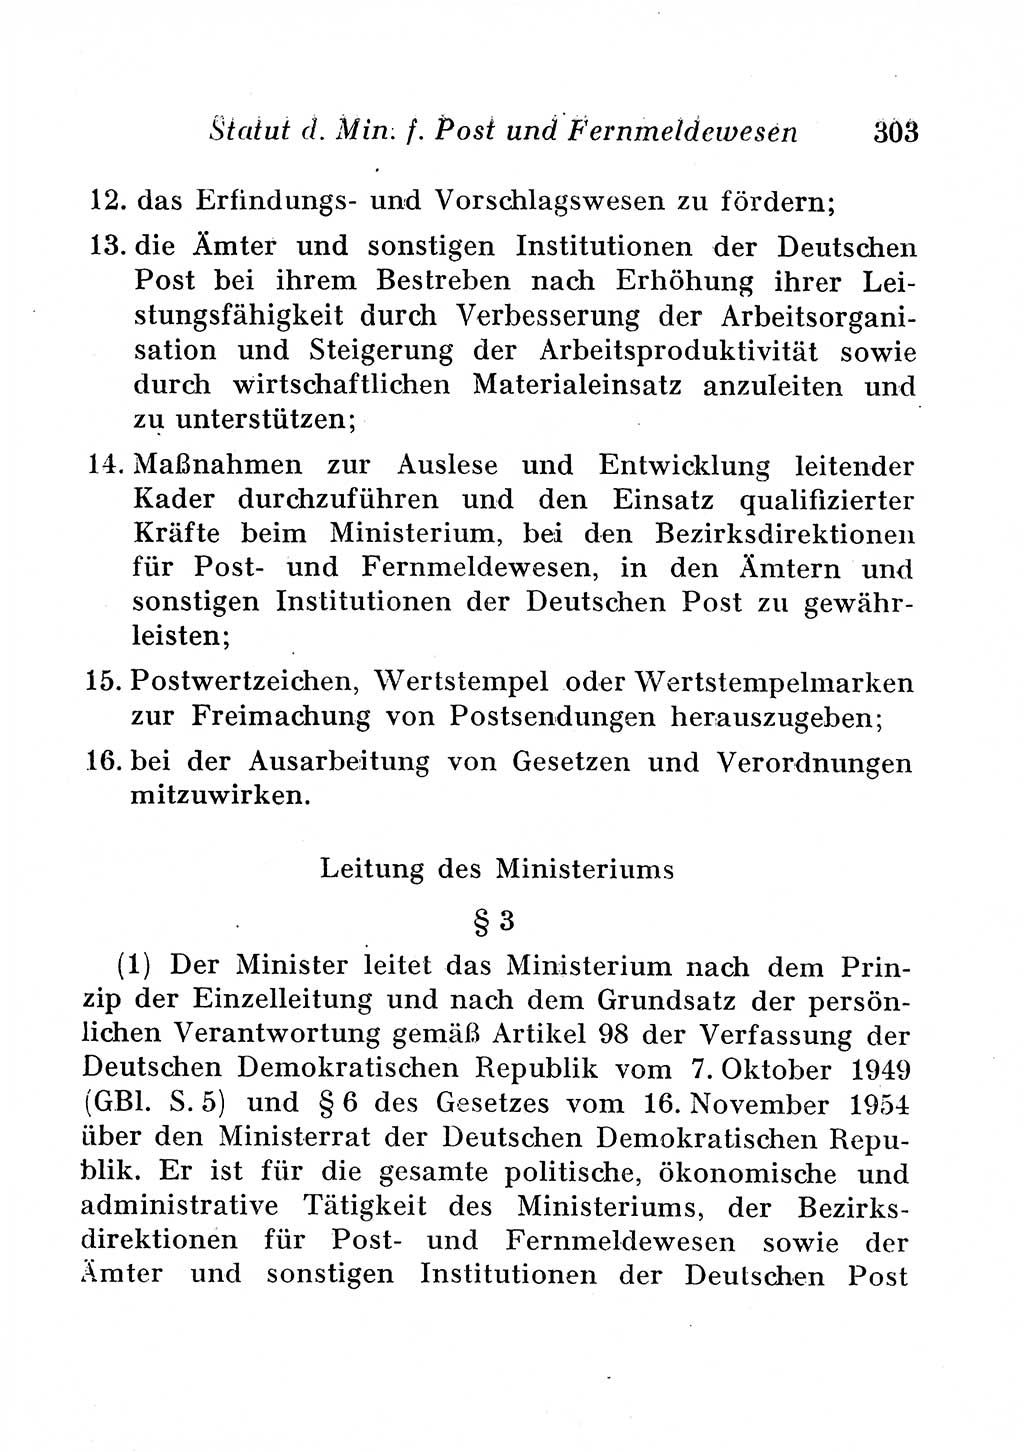 Staats- und verwaltungsrechtliche Gesetze der Deutschen Demokratischen Republik (DDR) 1958, Seite 303 (StVerwR Ges. DDR 1958, S. 303)